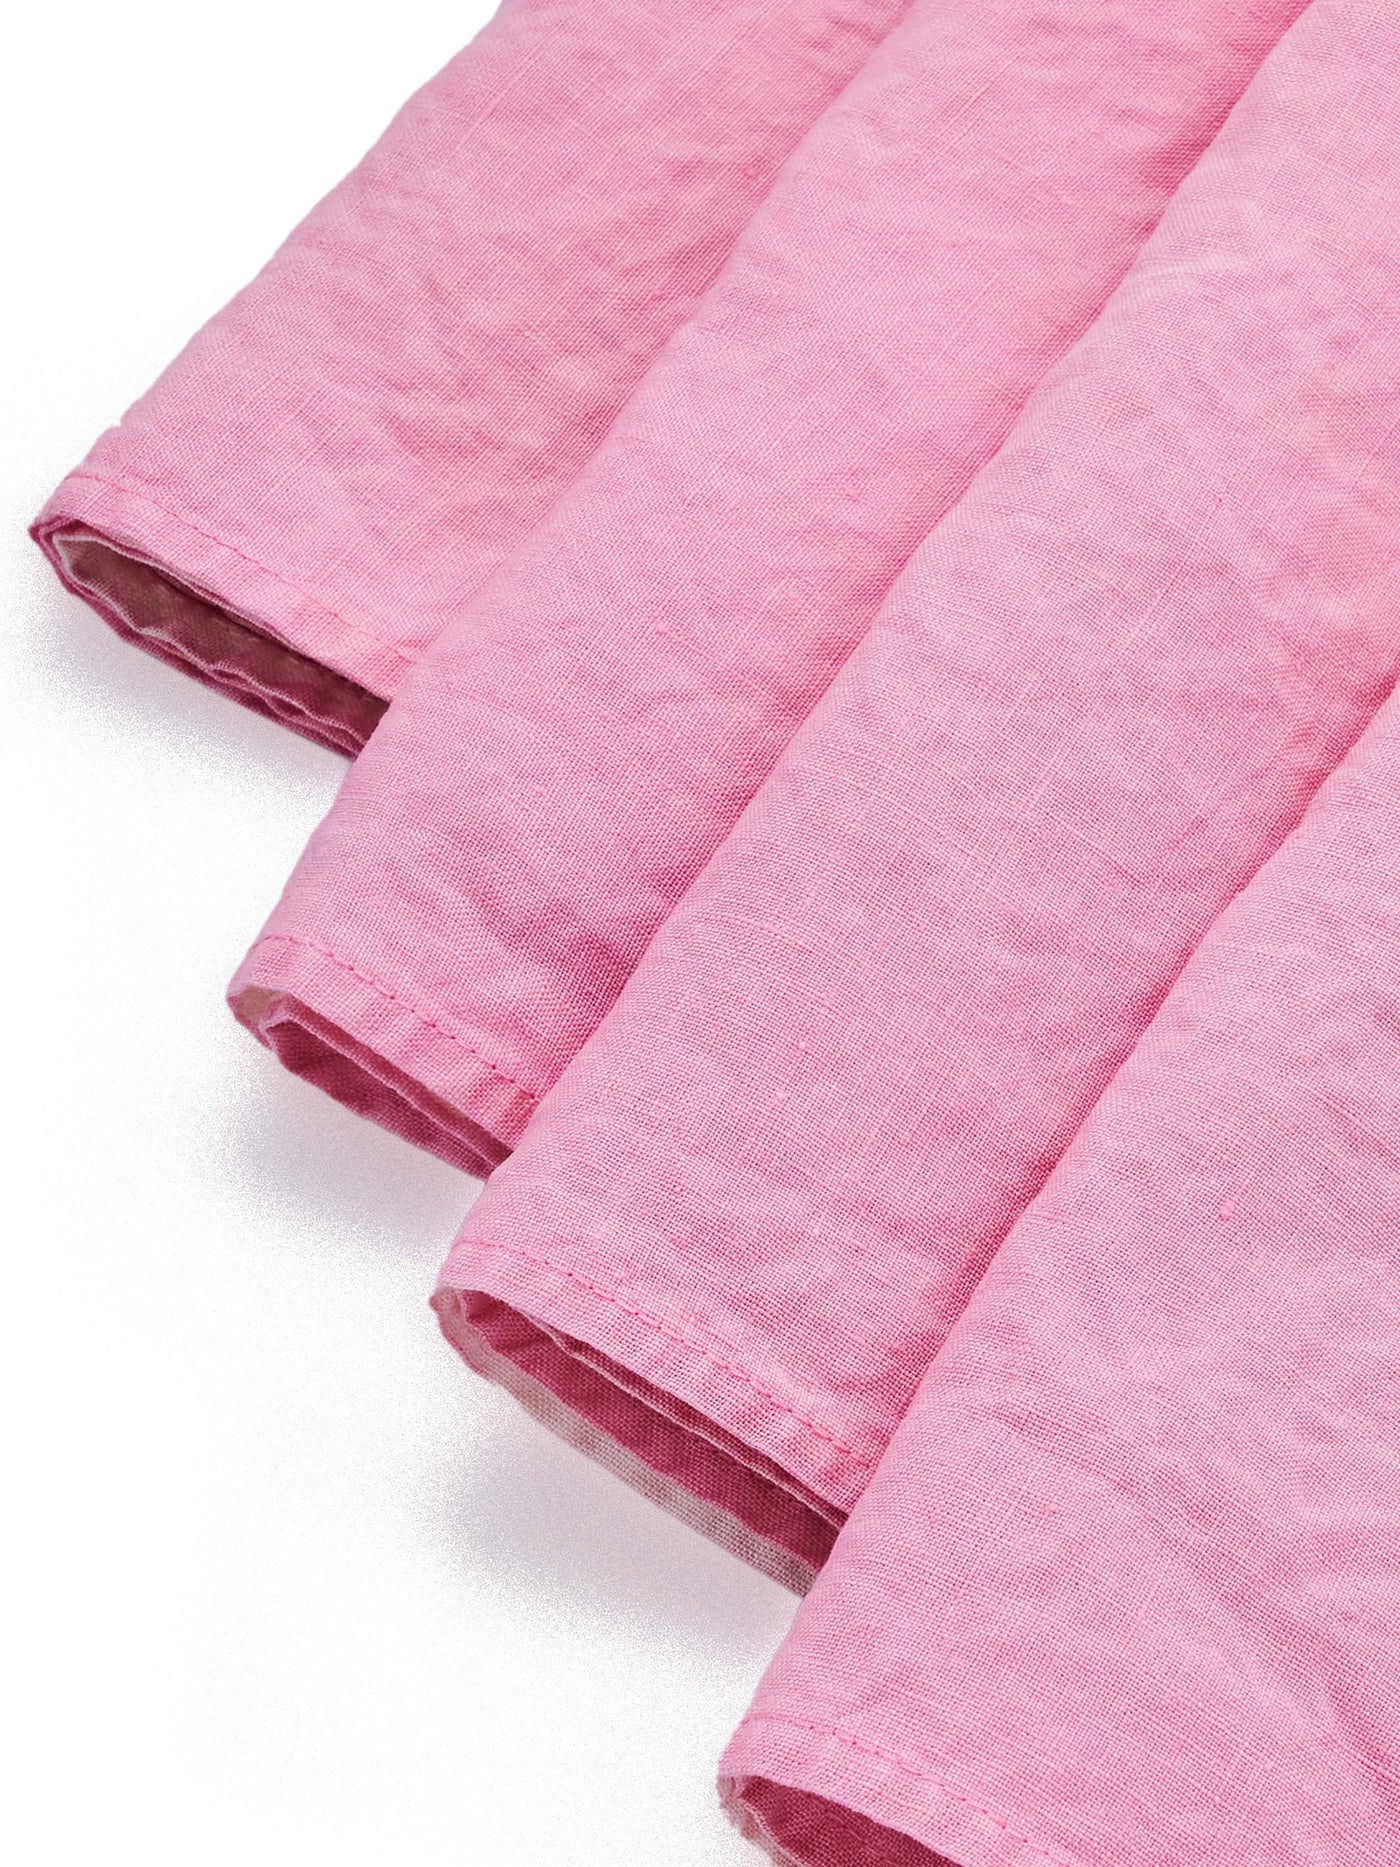 Linen Napkin Set in Pink - Bertozzi